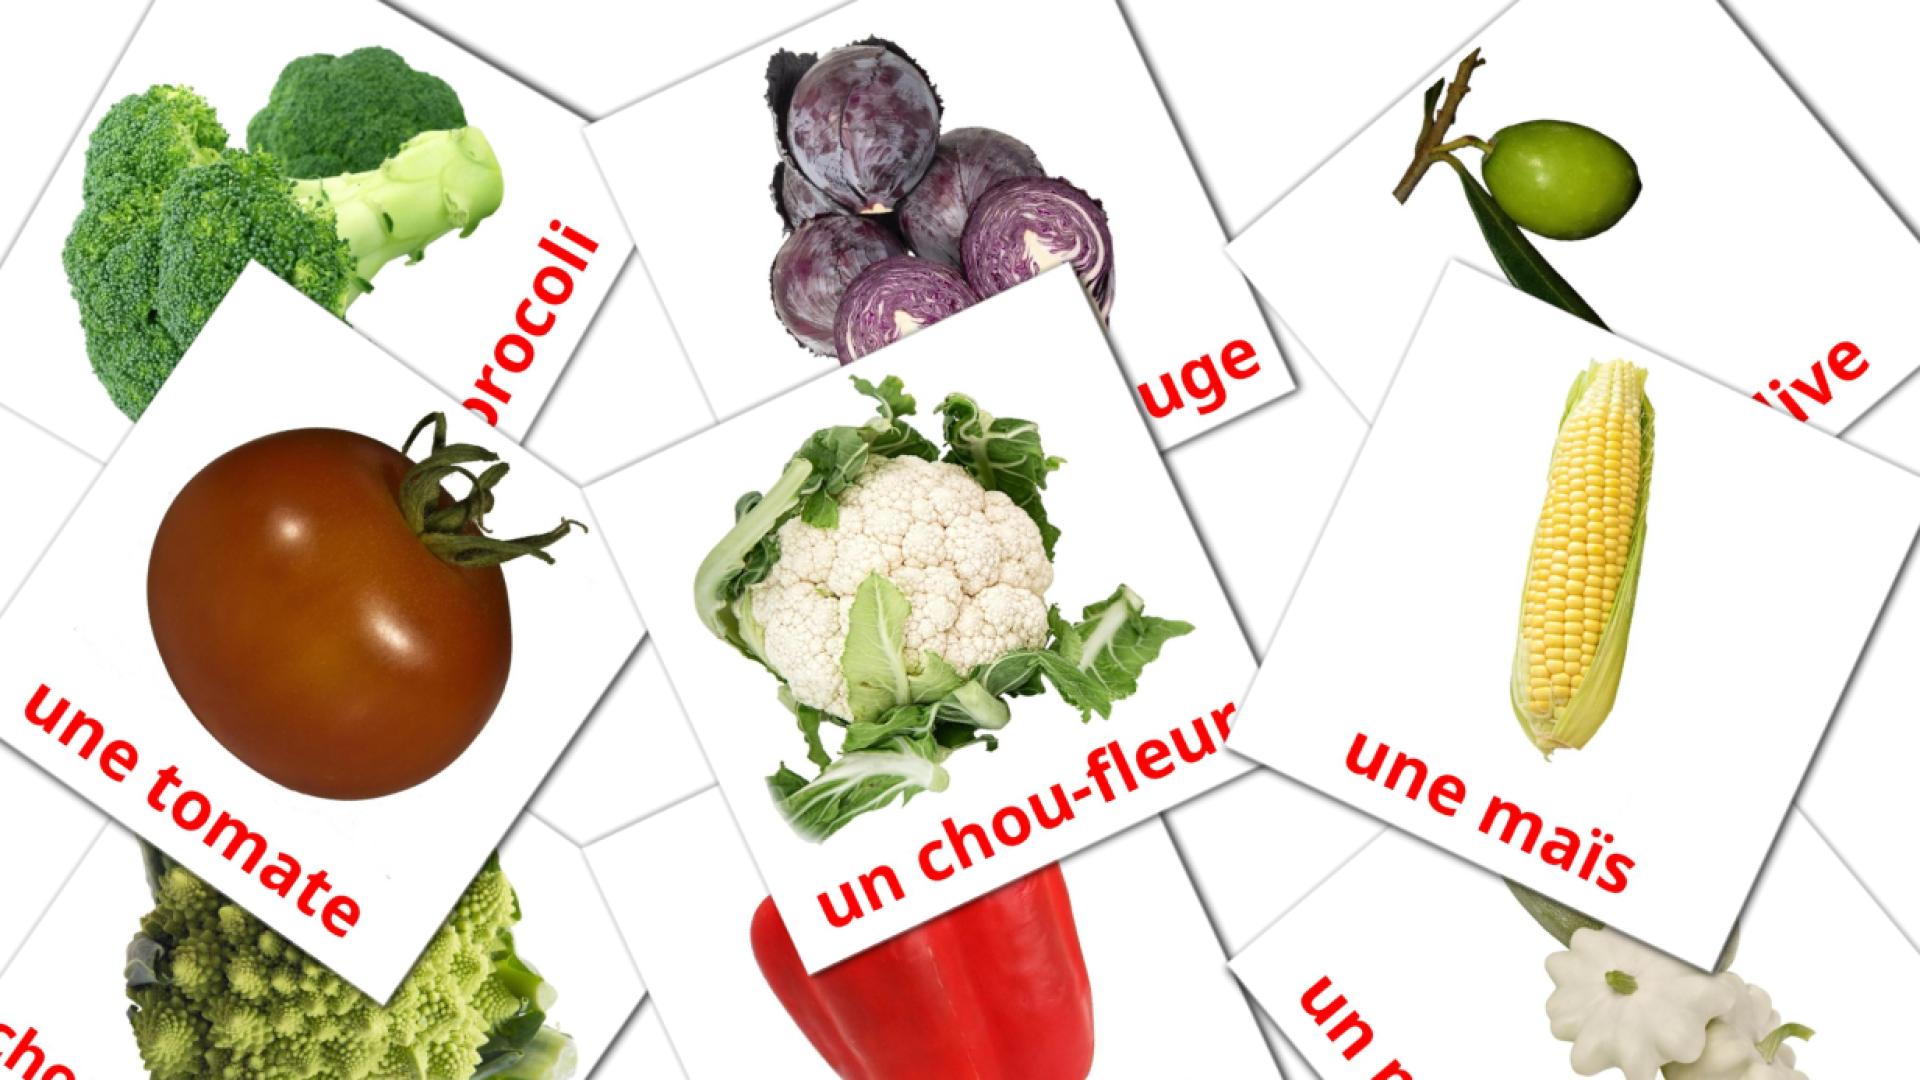 29 Flashcards de Les Légumes